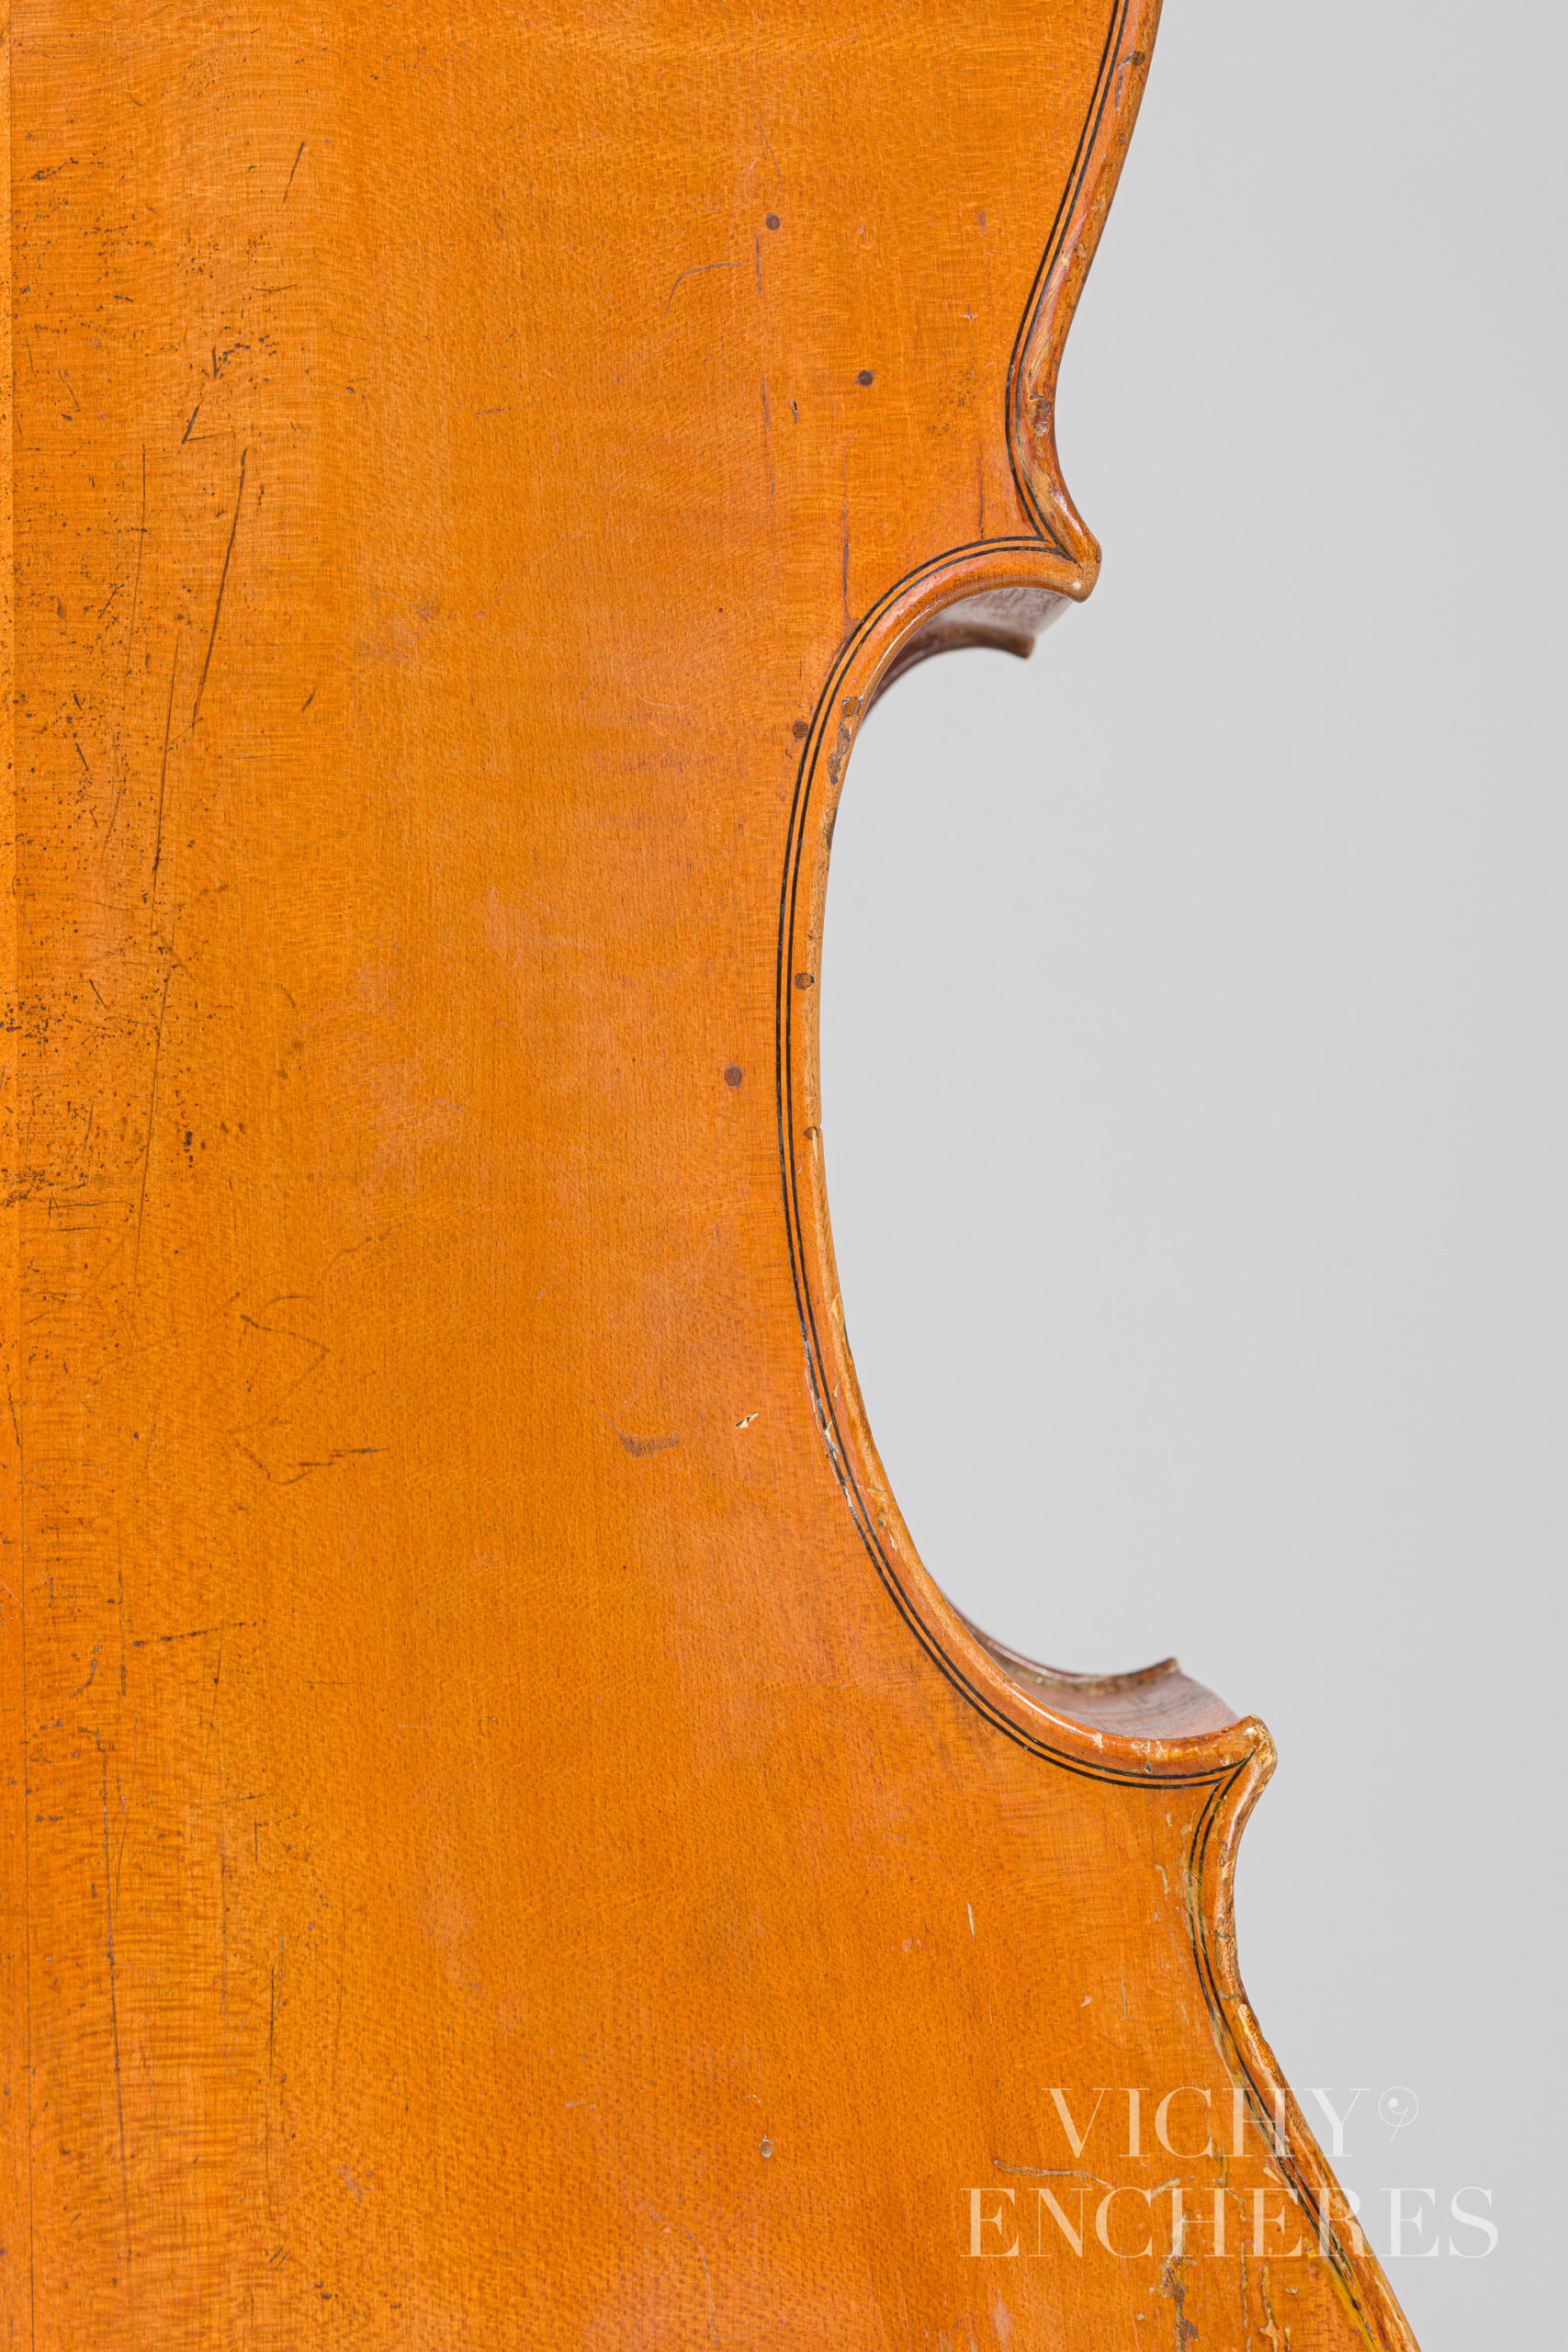 Violoncelle de Louis LAGETTO Instrument mis en vente par Vichy Enchères le 1er décembre 2022 © Christophe Darbelet